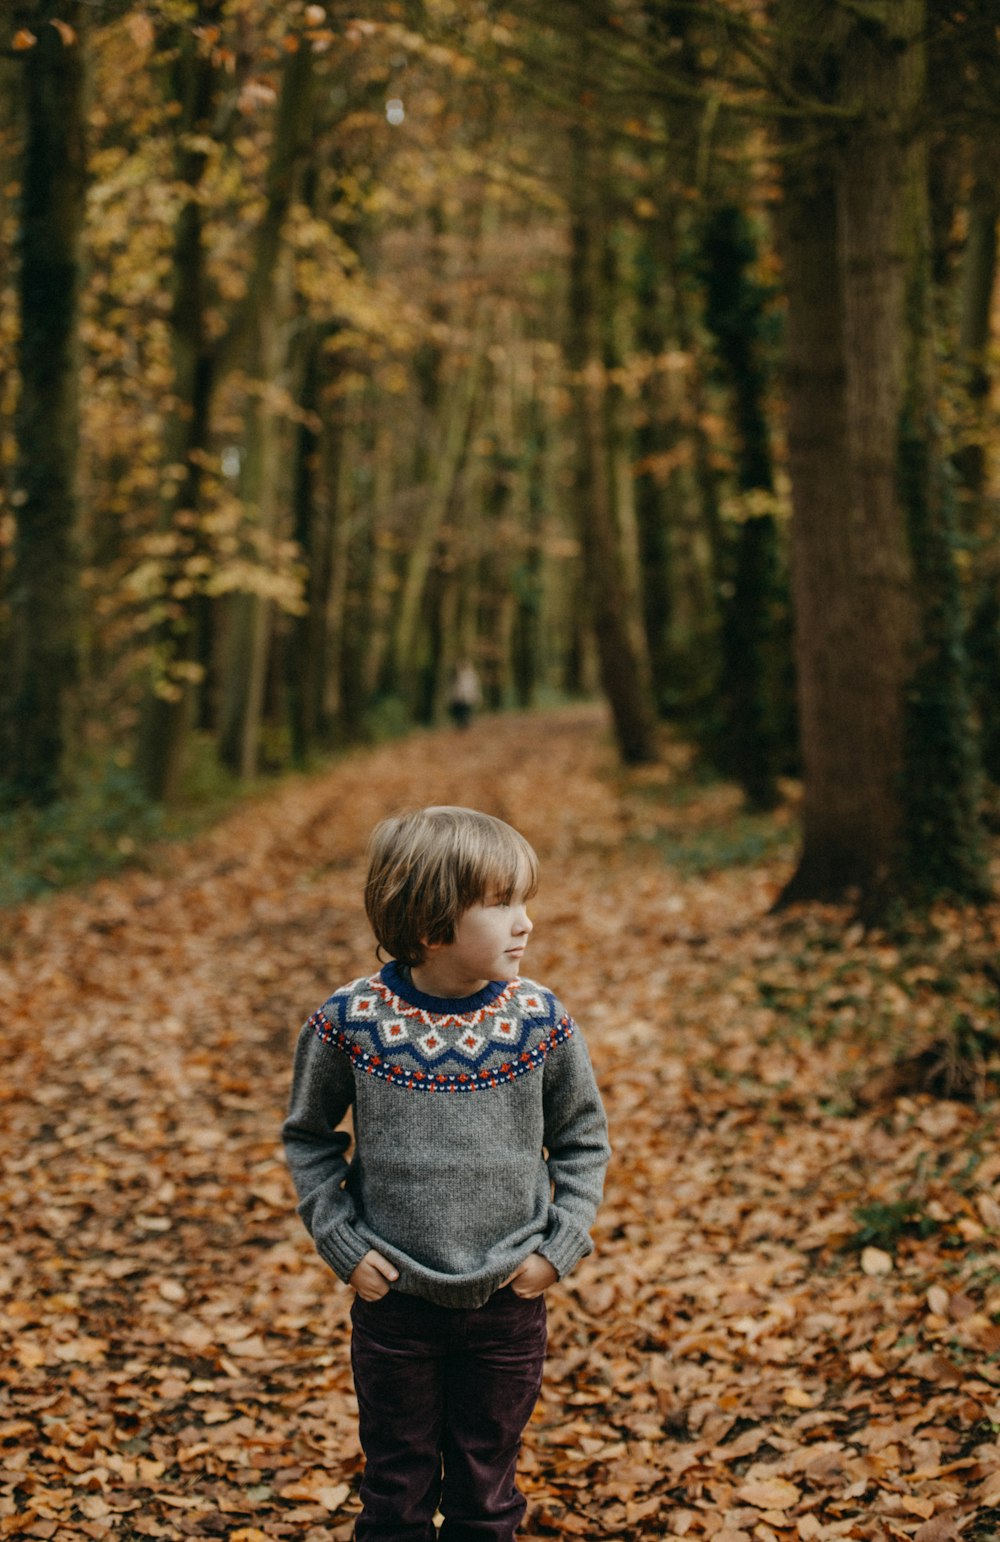 ポケットに手を突っ込んだ少年が、秋の季節に木々の近くで左手を見つめている